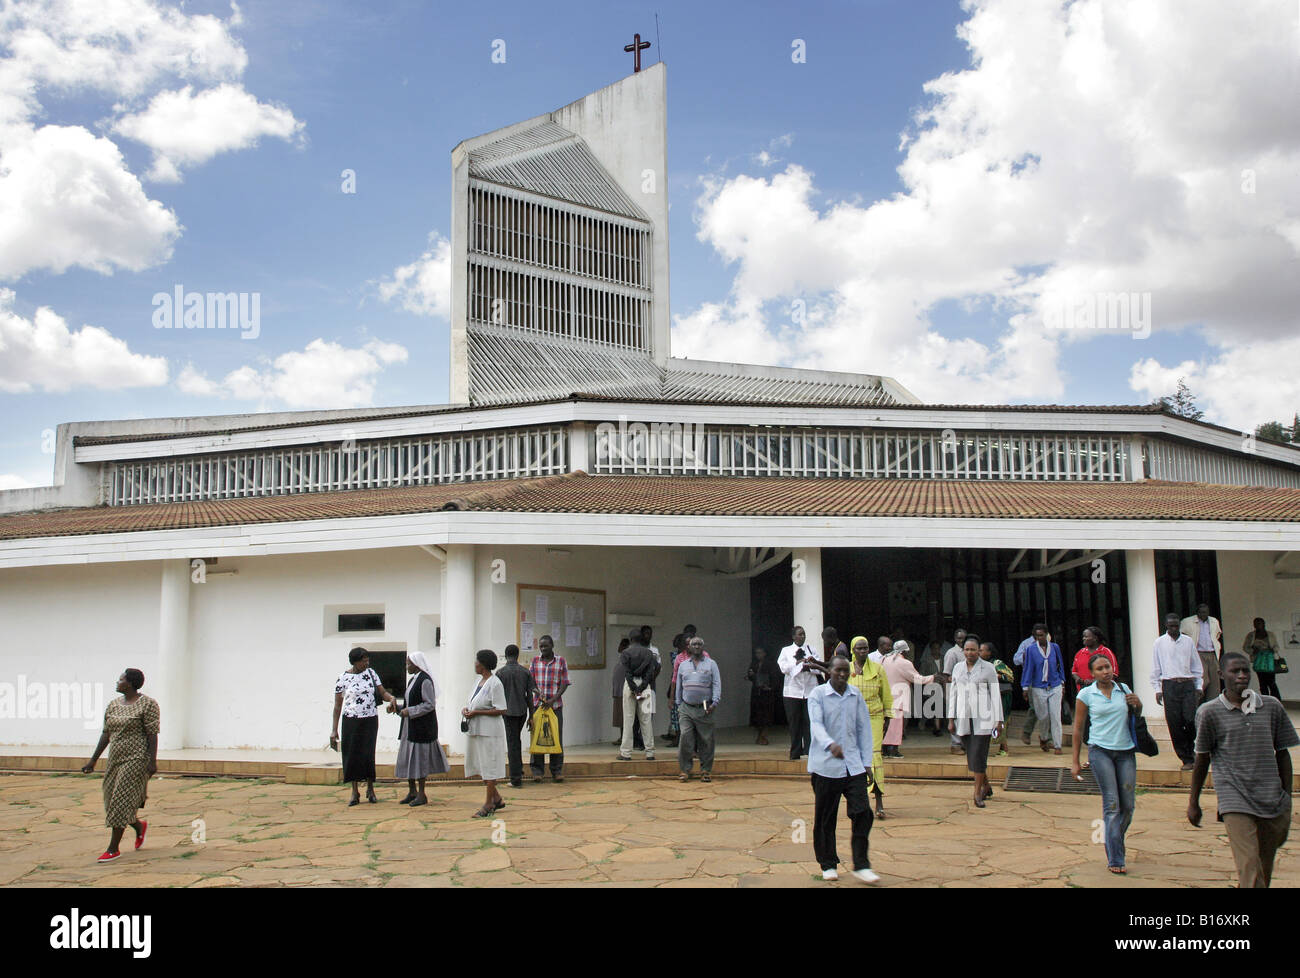 Kenya : la cathédrale catholique romaine "Sacré Coeur de Jésus" à Eldoret Banque D'Images